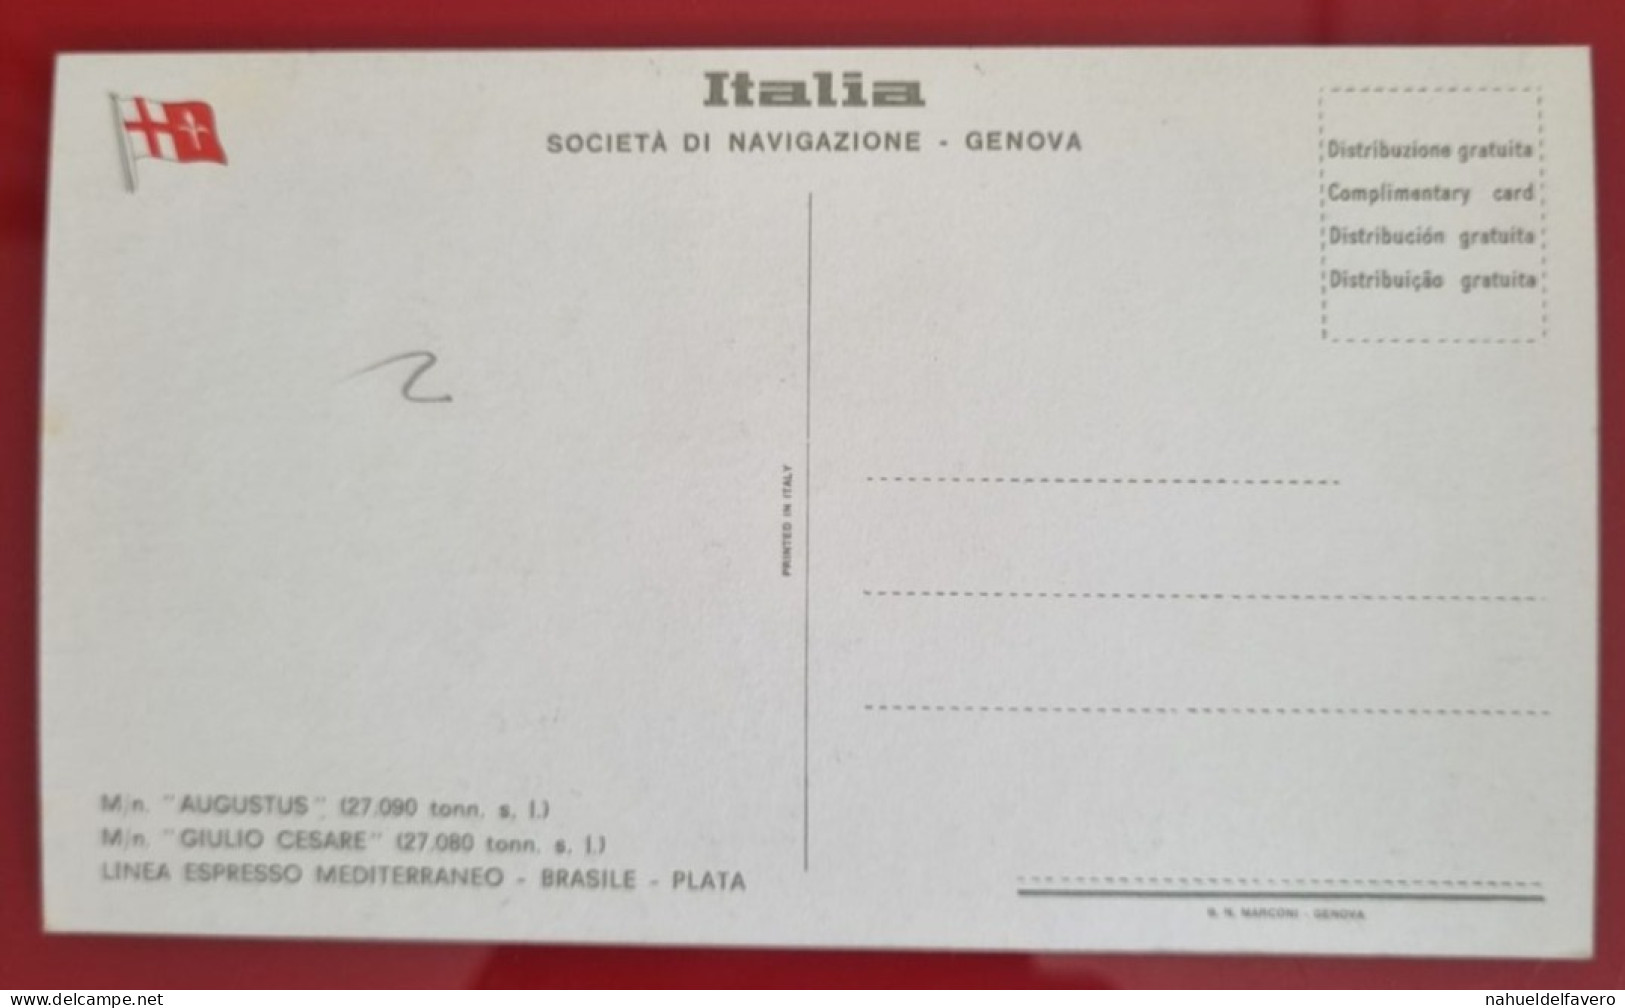 Carta Postale Non Circulée - ITALIA - SOCIETÁ DI NAVEGAZIONE, GENOVA - M/n GIULIO CESARE (27.080 Tonn. S. L.) - Houseboats